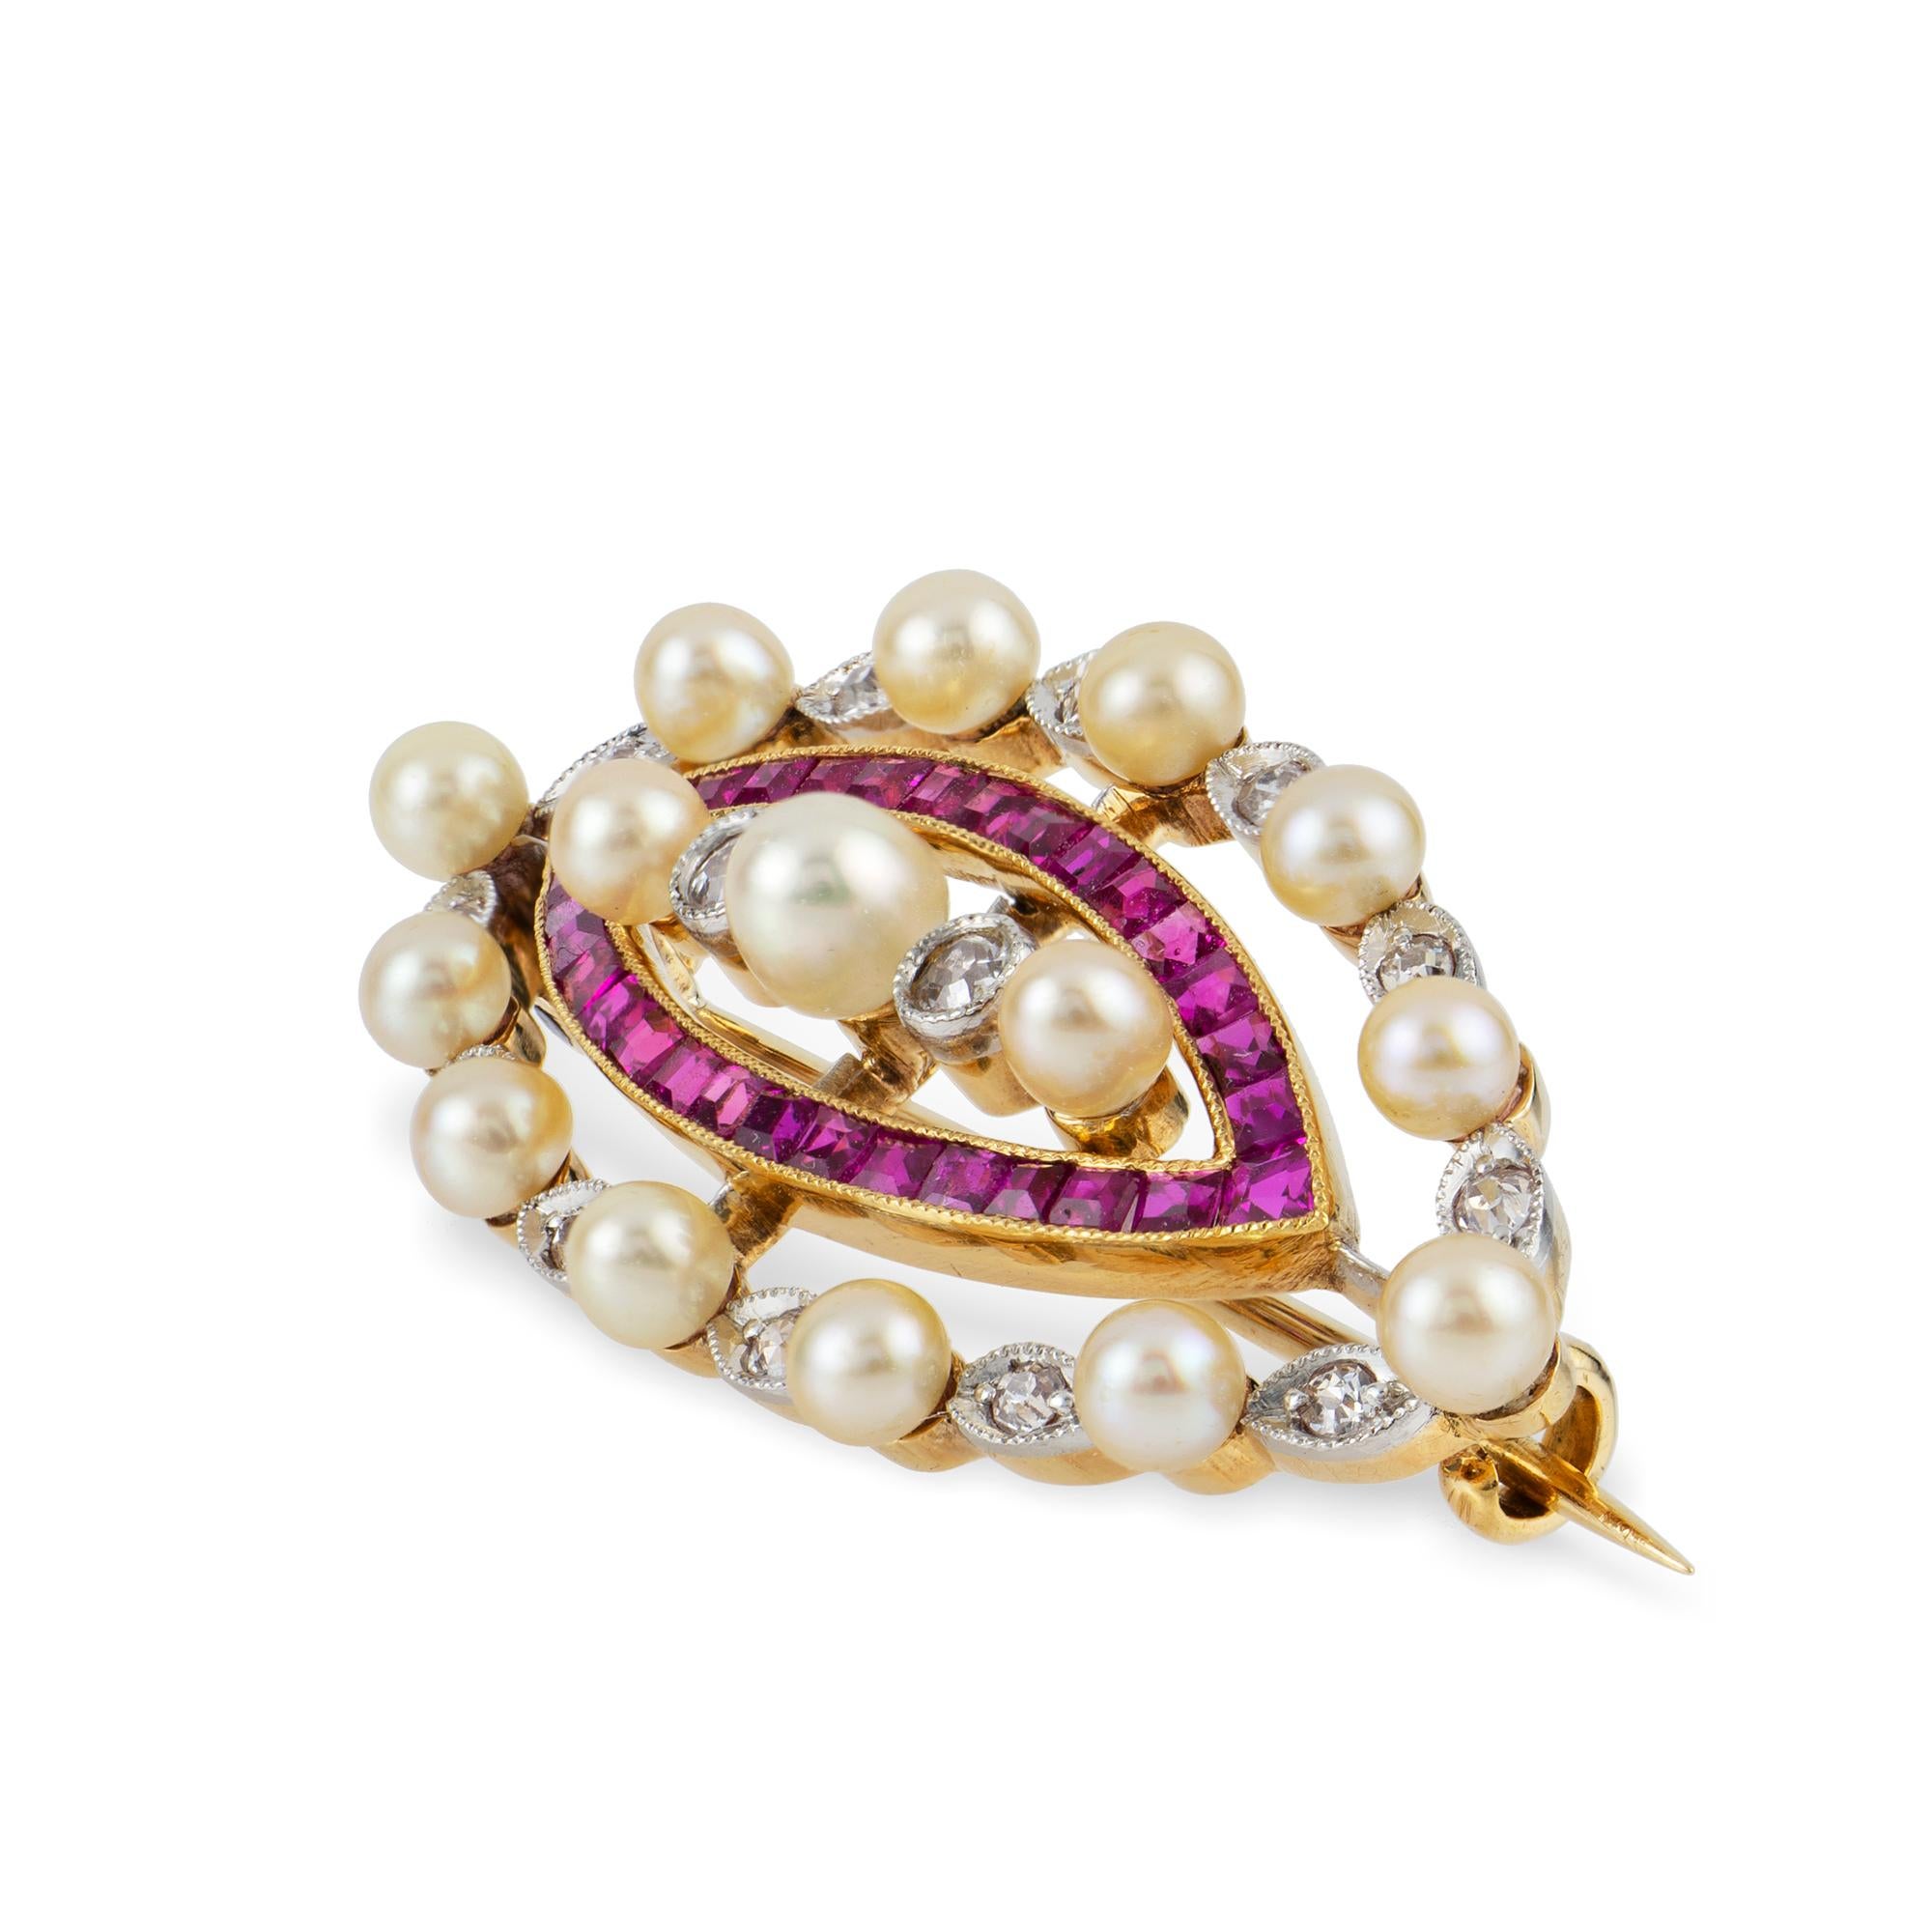 Edwardianische Perlen-Diamant-Rubin-Brosche, in der Mitte drei horizontal angeordnete Perlen mit zwei Diamanten im Schweizer Schliff dazwischen, umgeben von einem marquiseförmigen Rahmen, der mit Rubinen im Kaliberschliff besetzt ist, und einem